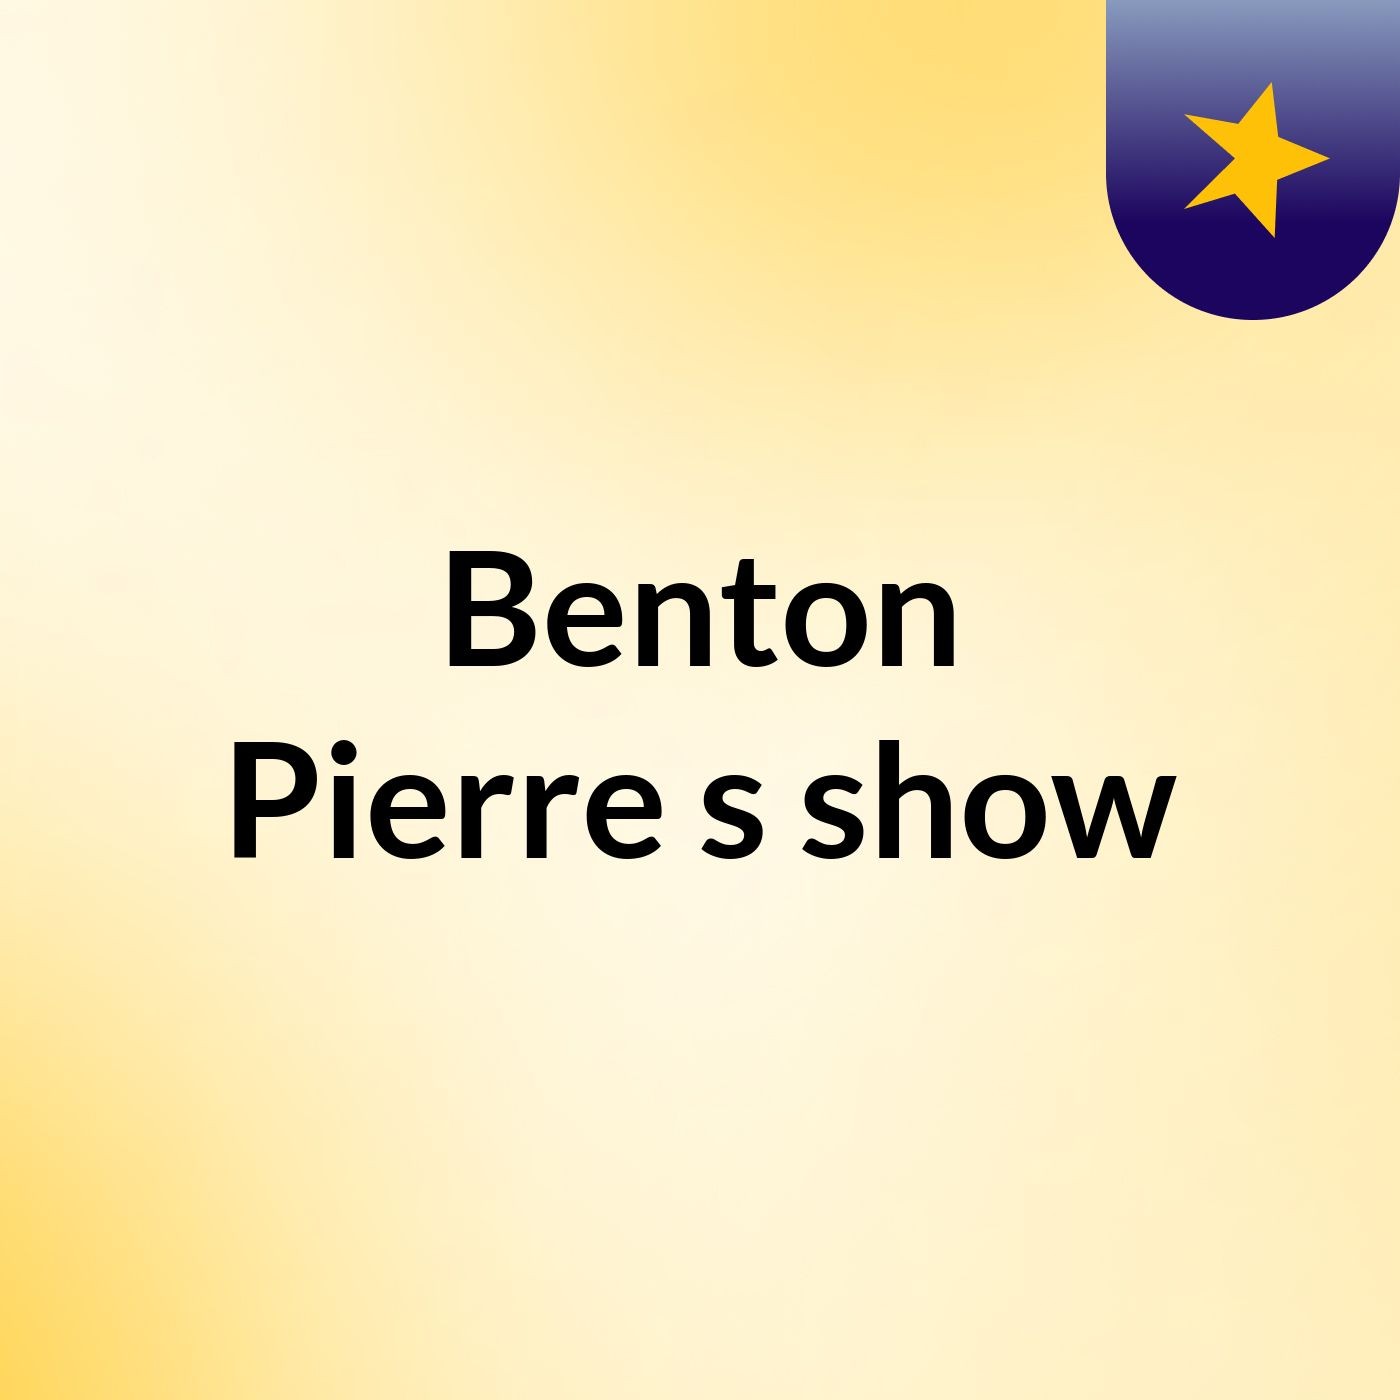 Benton Pierre's show